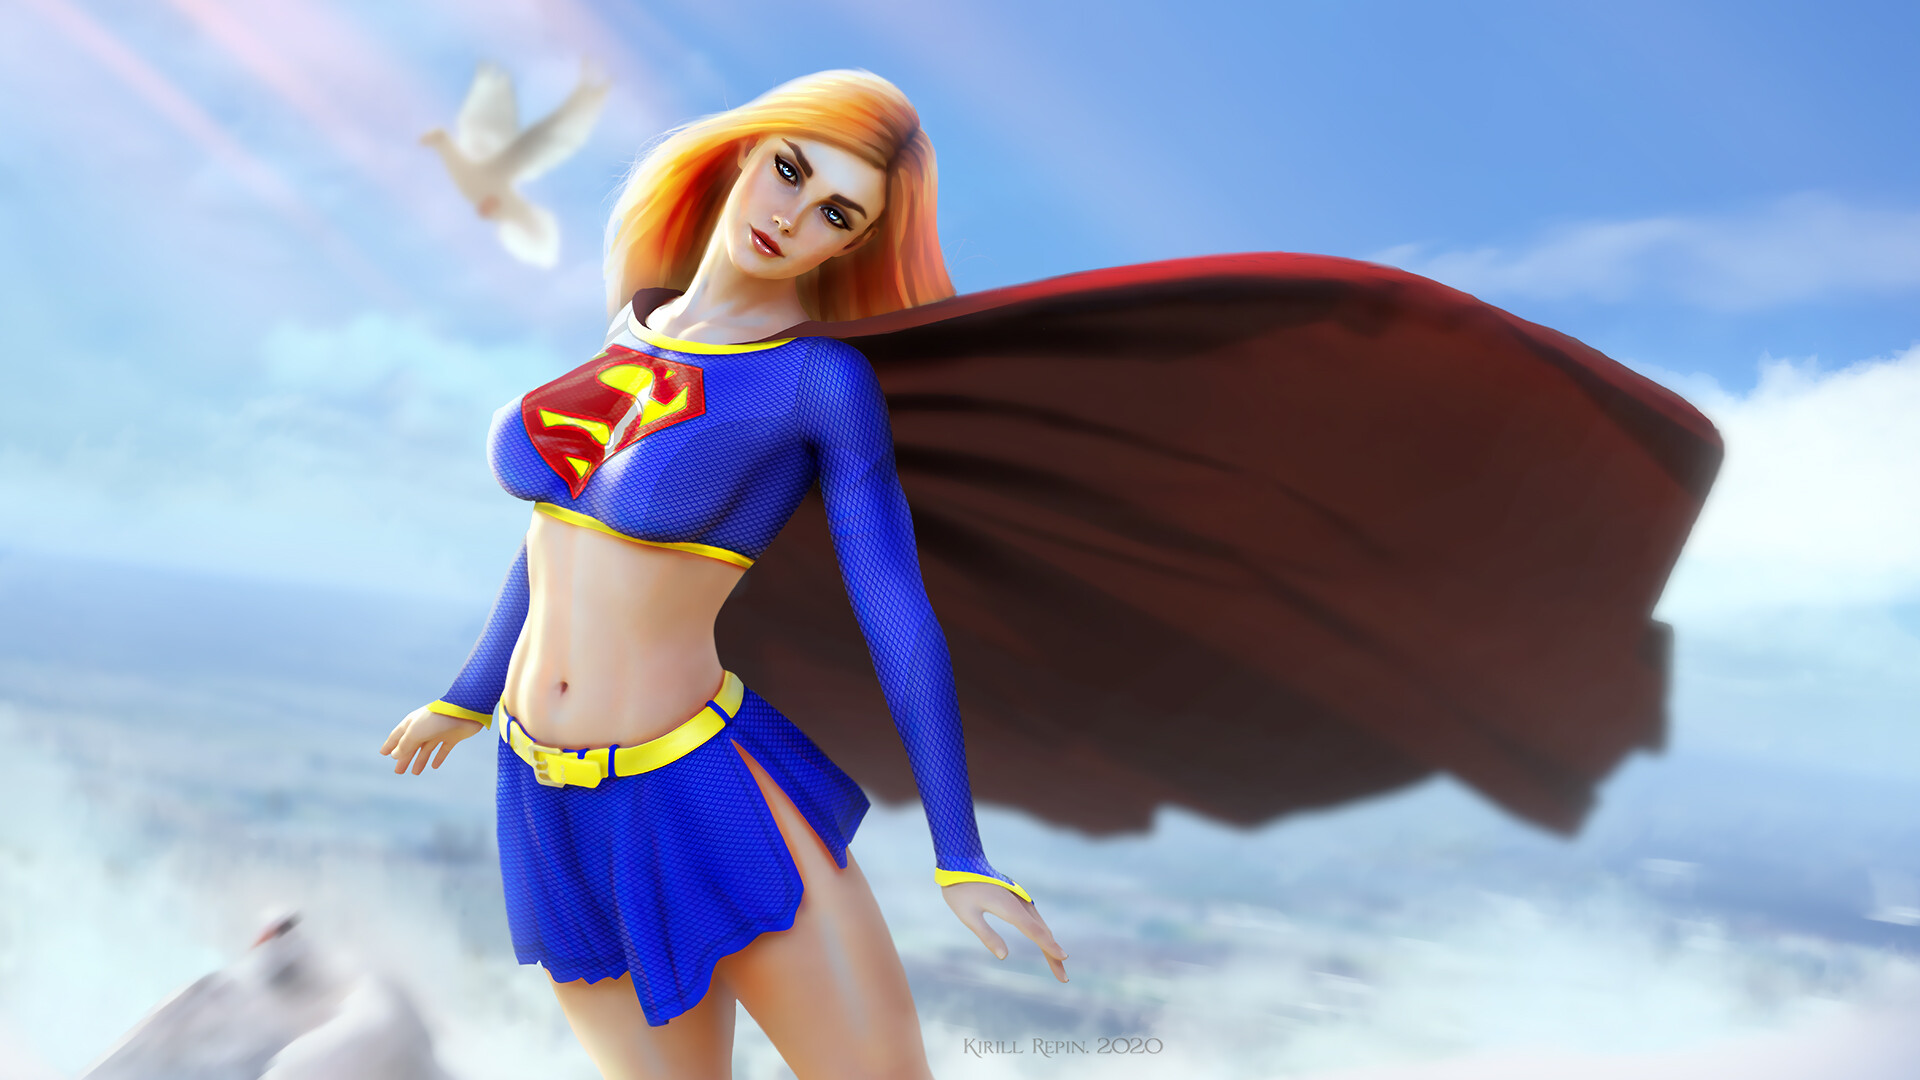 General 1920x1080 Supergirl fantasy girl fantasy art ArtStation cape blonde artwork DC Comics blue eyes blue skirt clouds